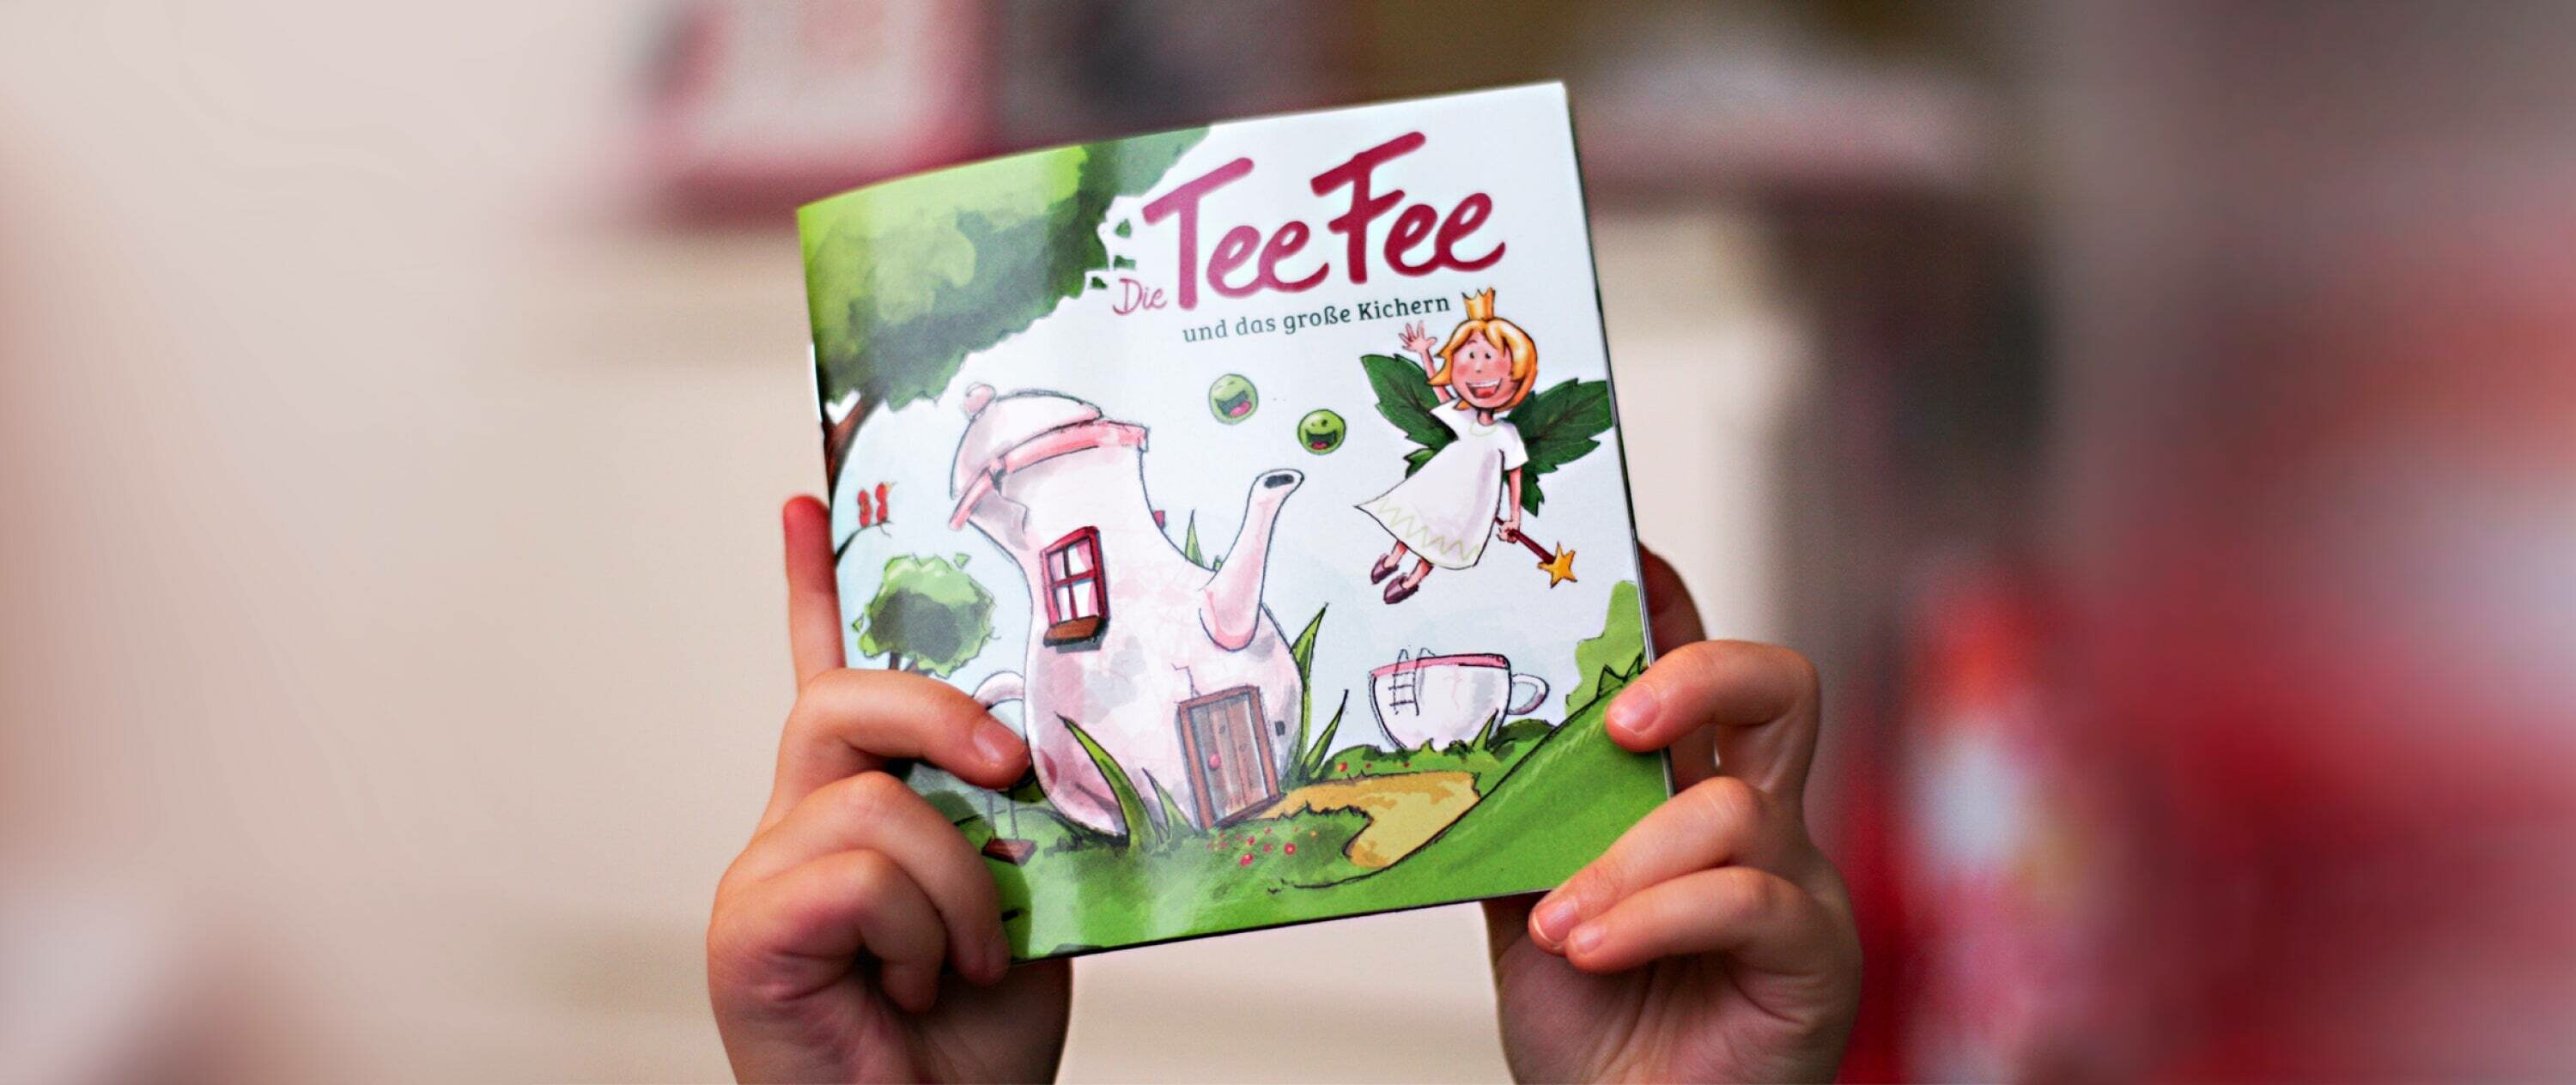 TeeFee-Buch Das große kichern